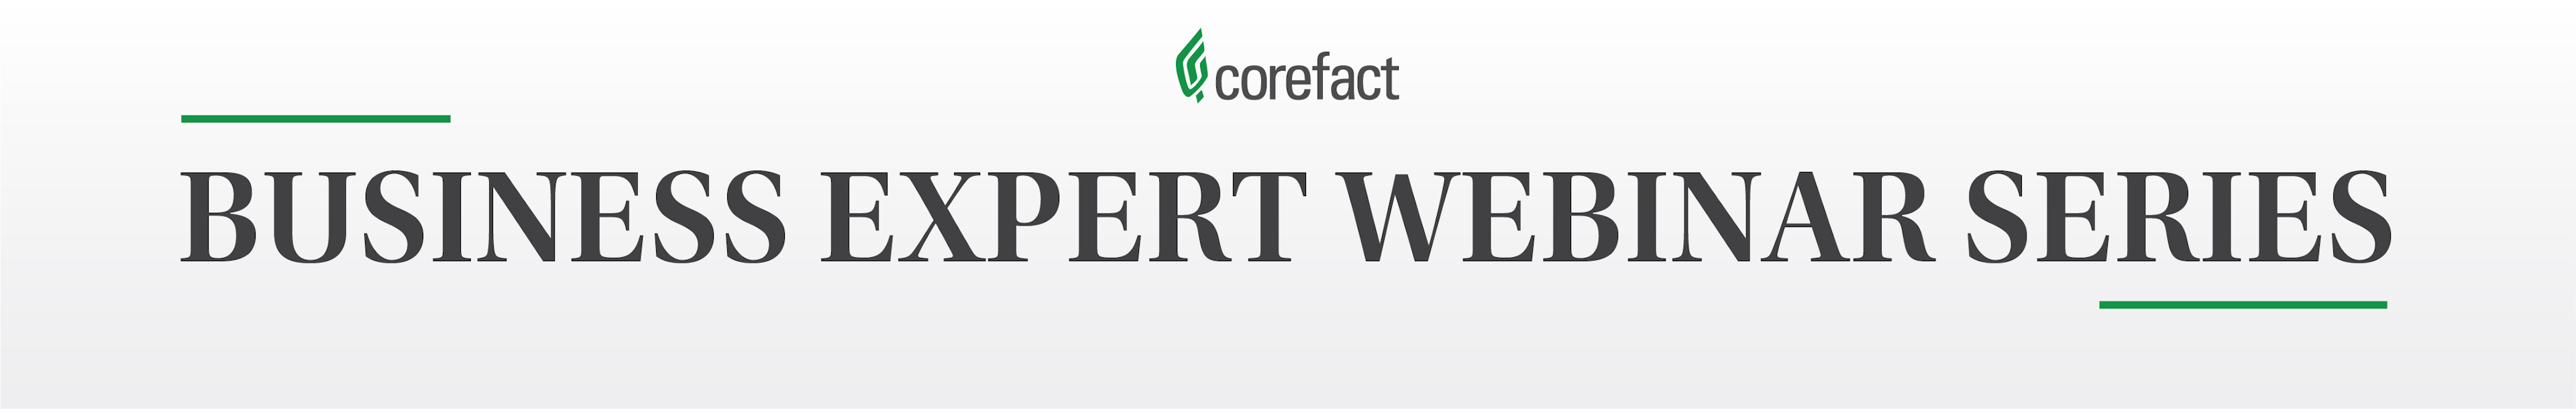 Corefact - Business Expert Webinar Series